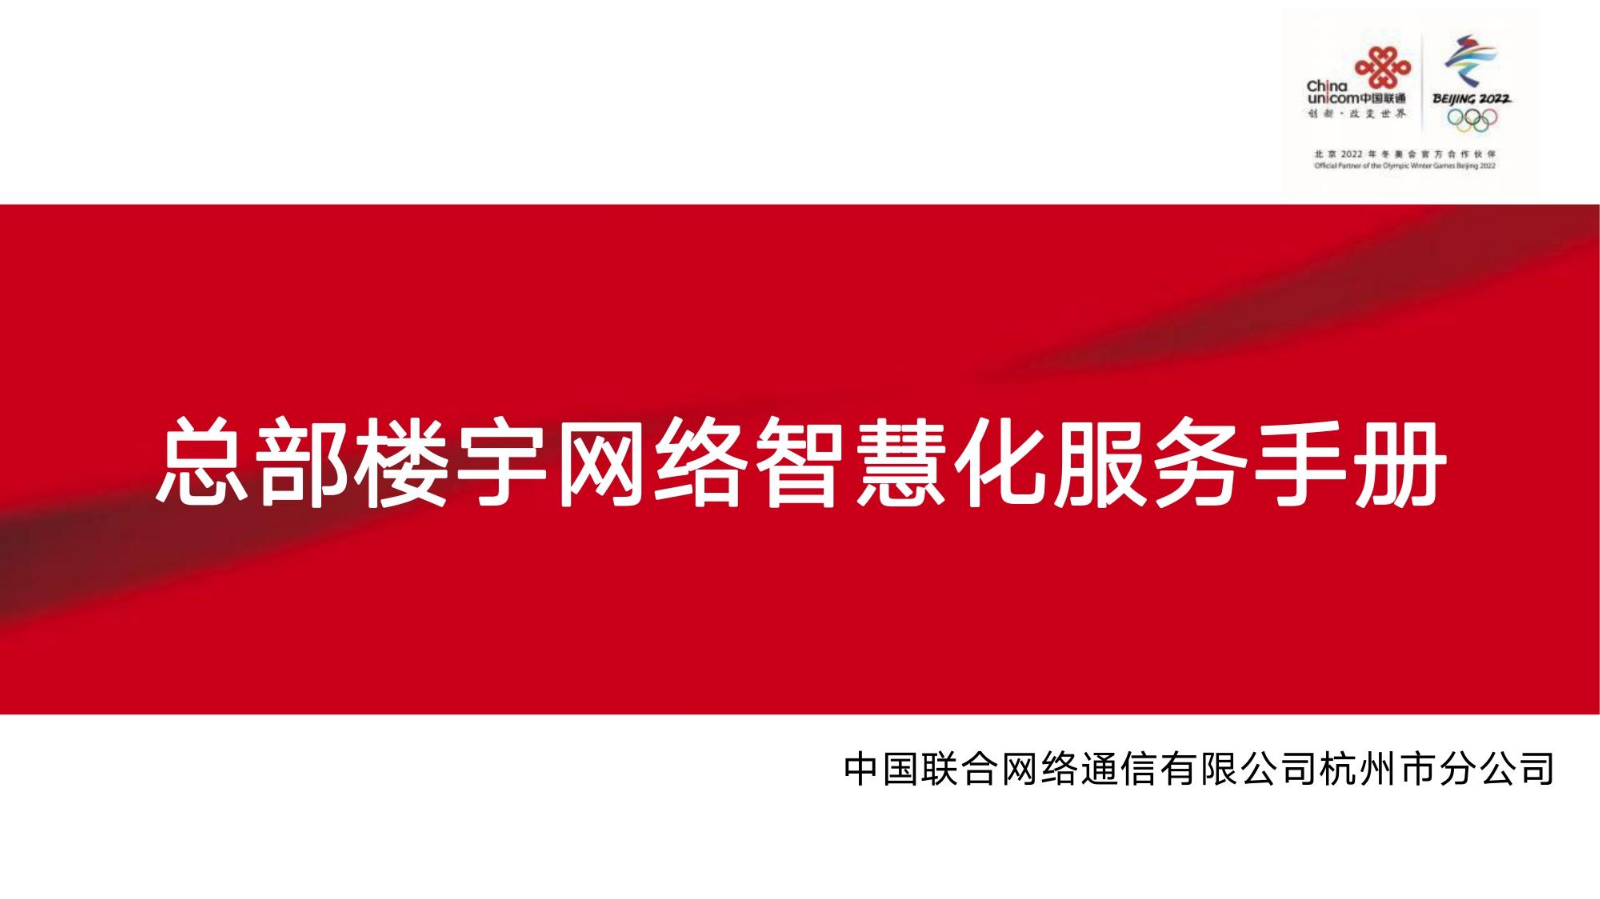 中国联通—总部楼宇网络智慧化服务手册